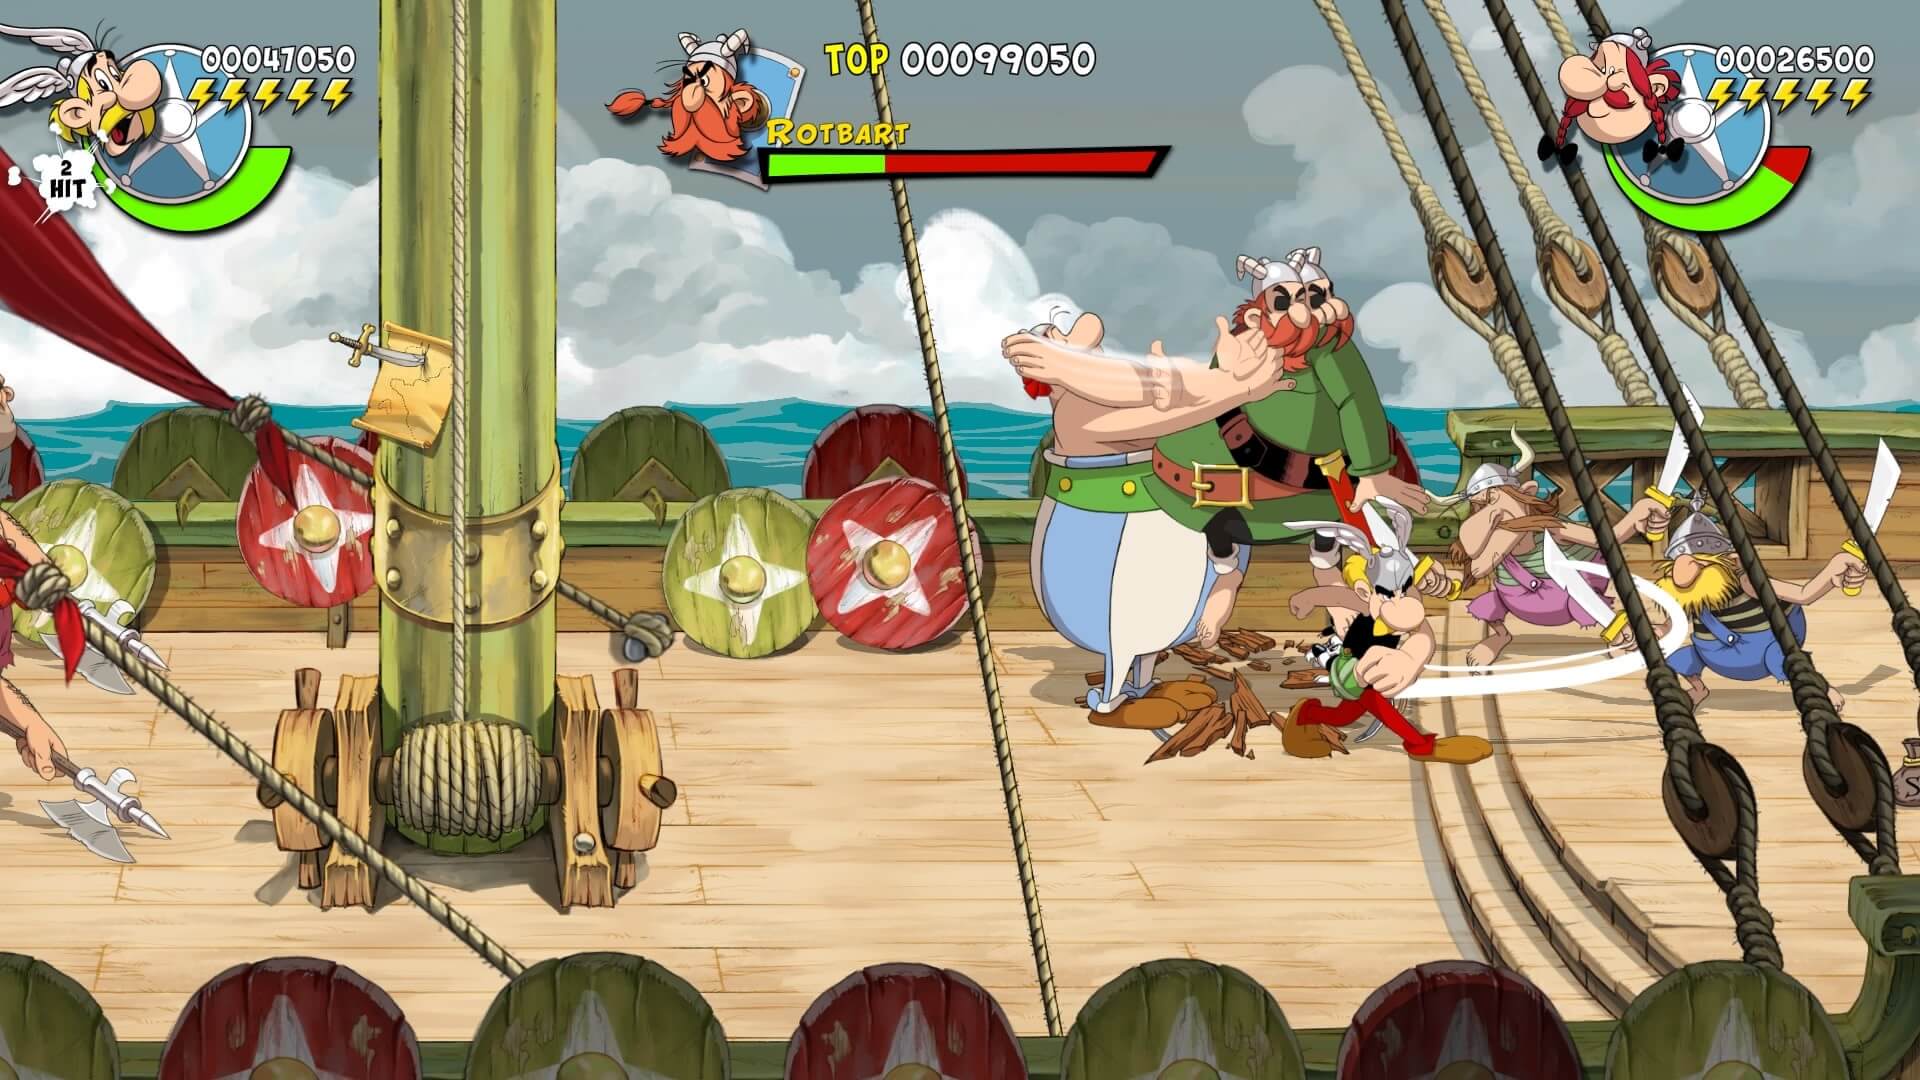 asterix & obelix slap them all! 20211213193500